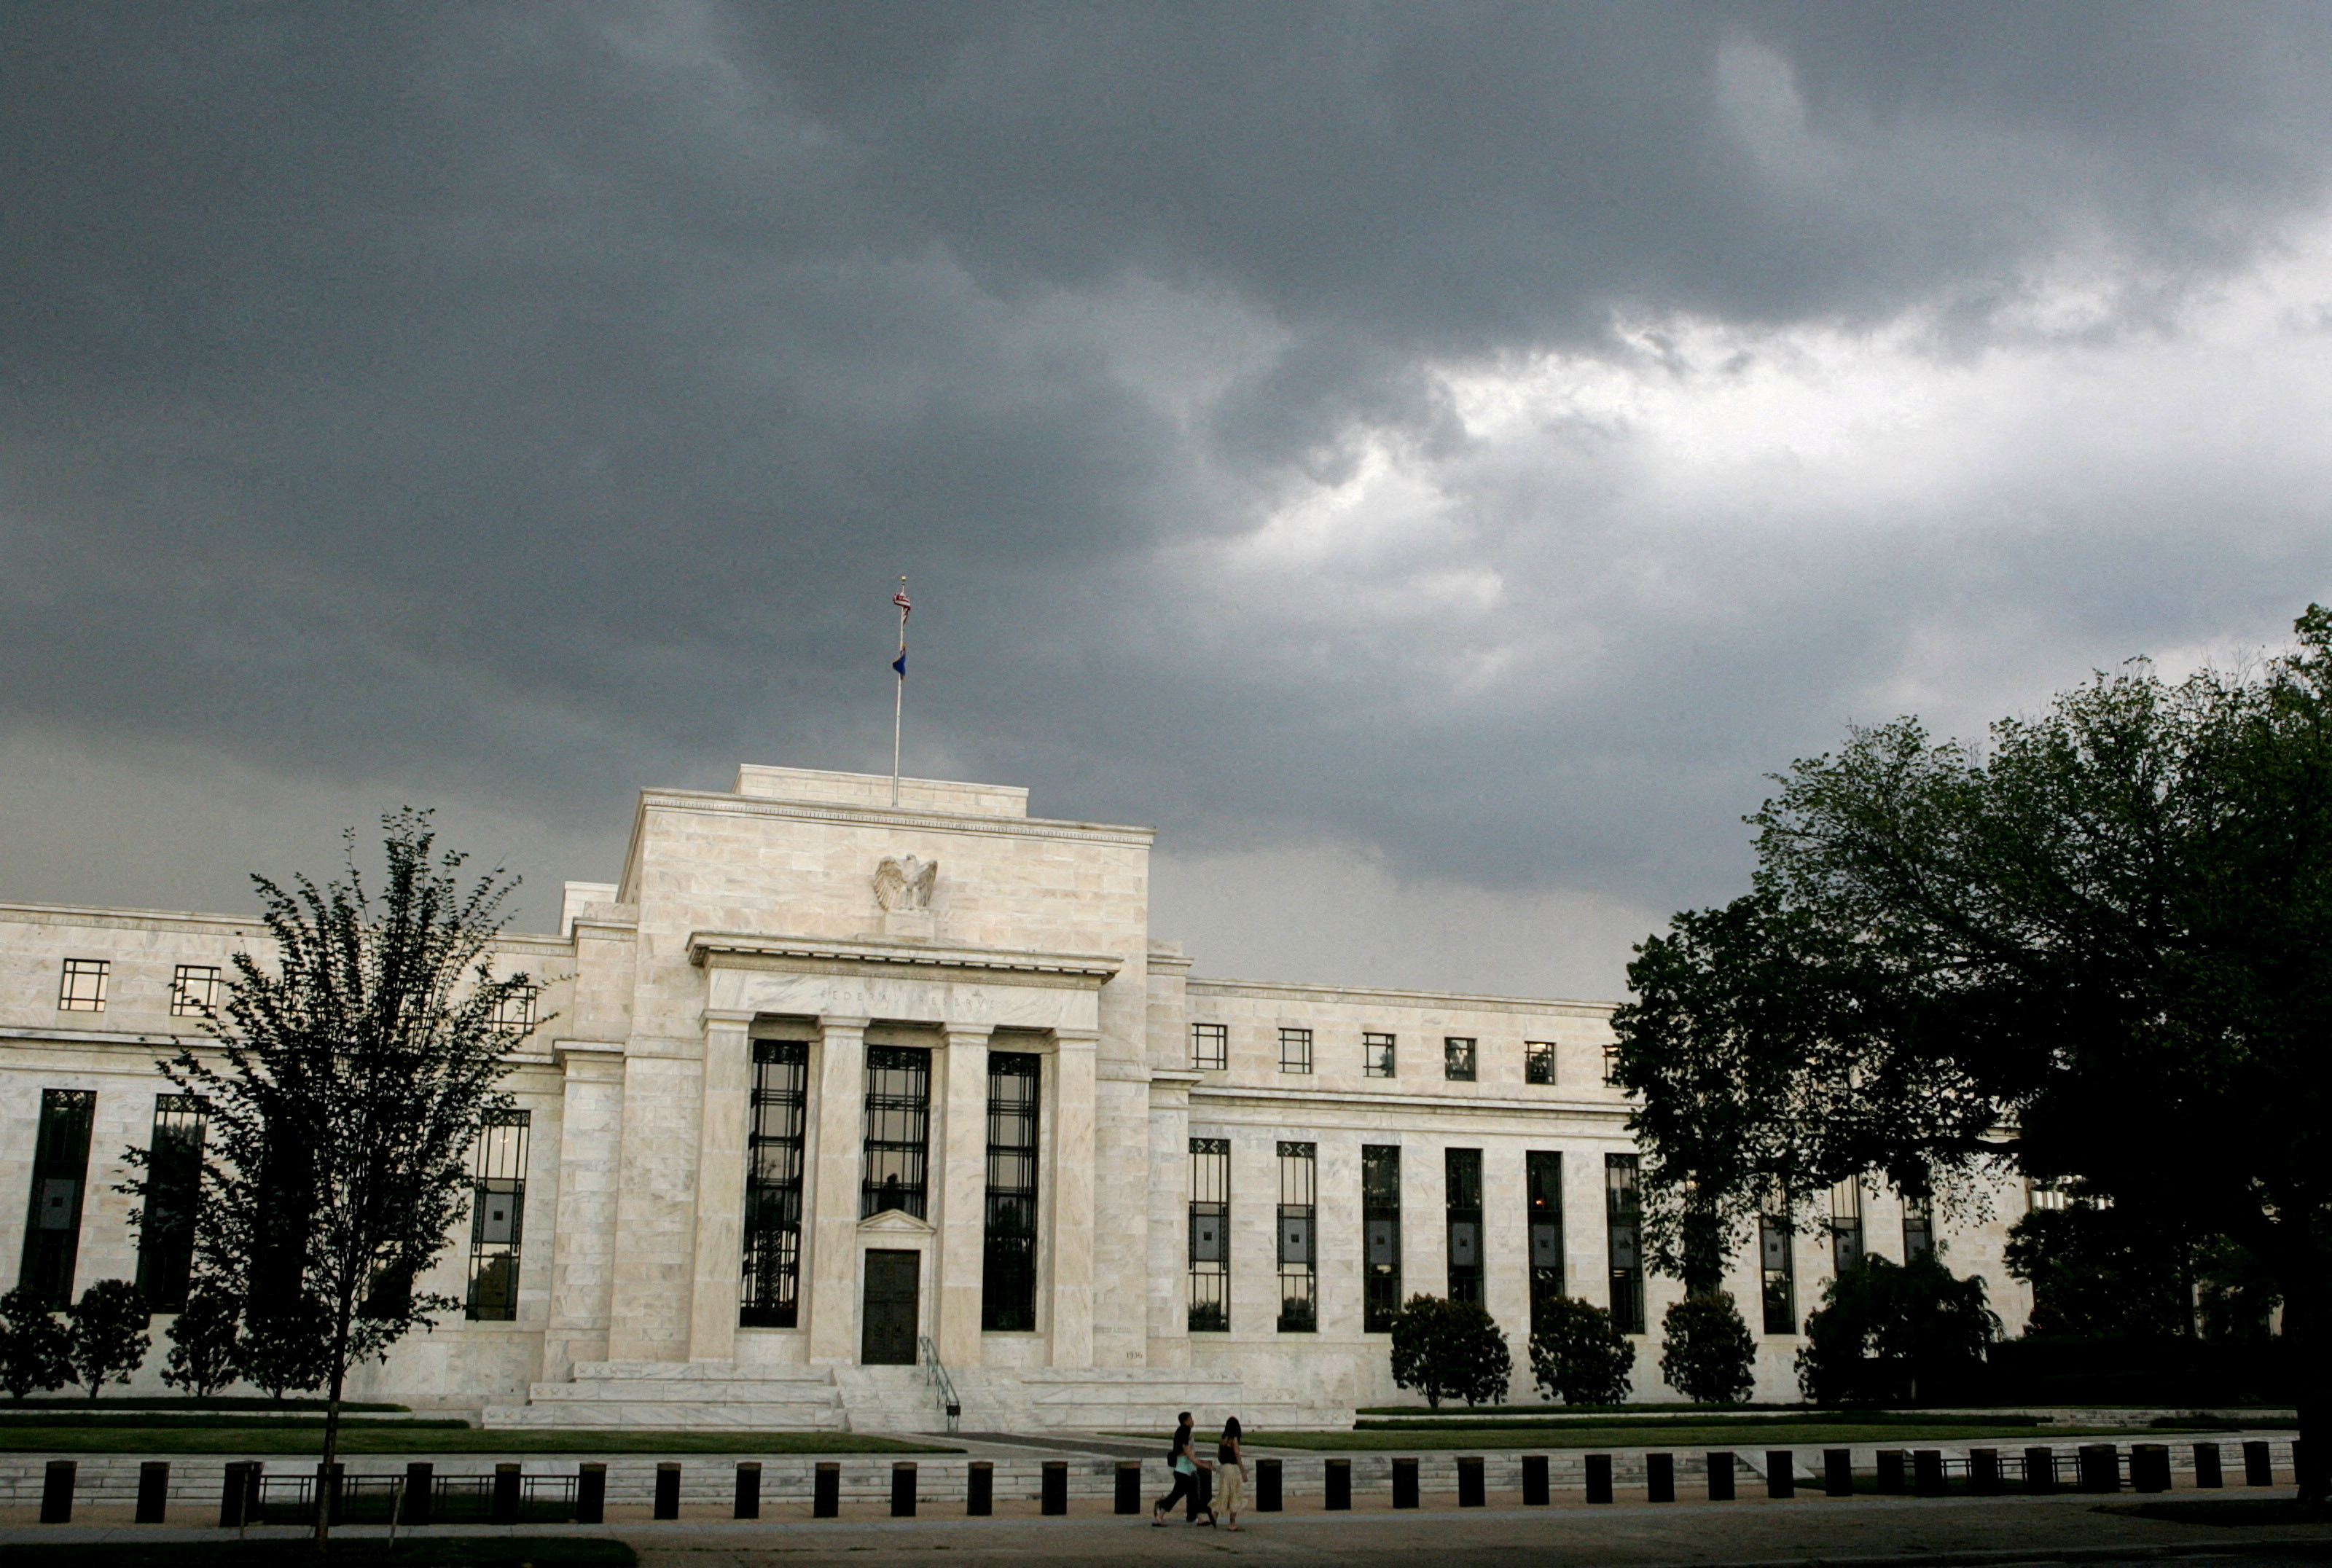 銀行資本規制「バーゼル３」、米当局に8月最終決定の動き＝ＢＢＧ